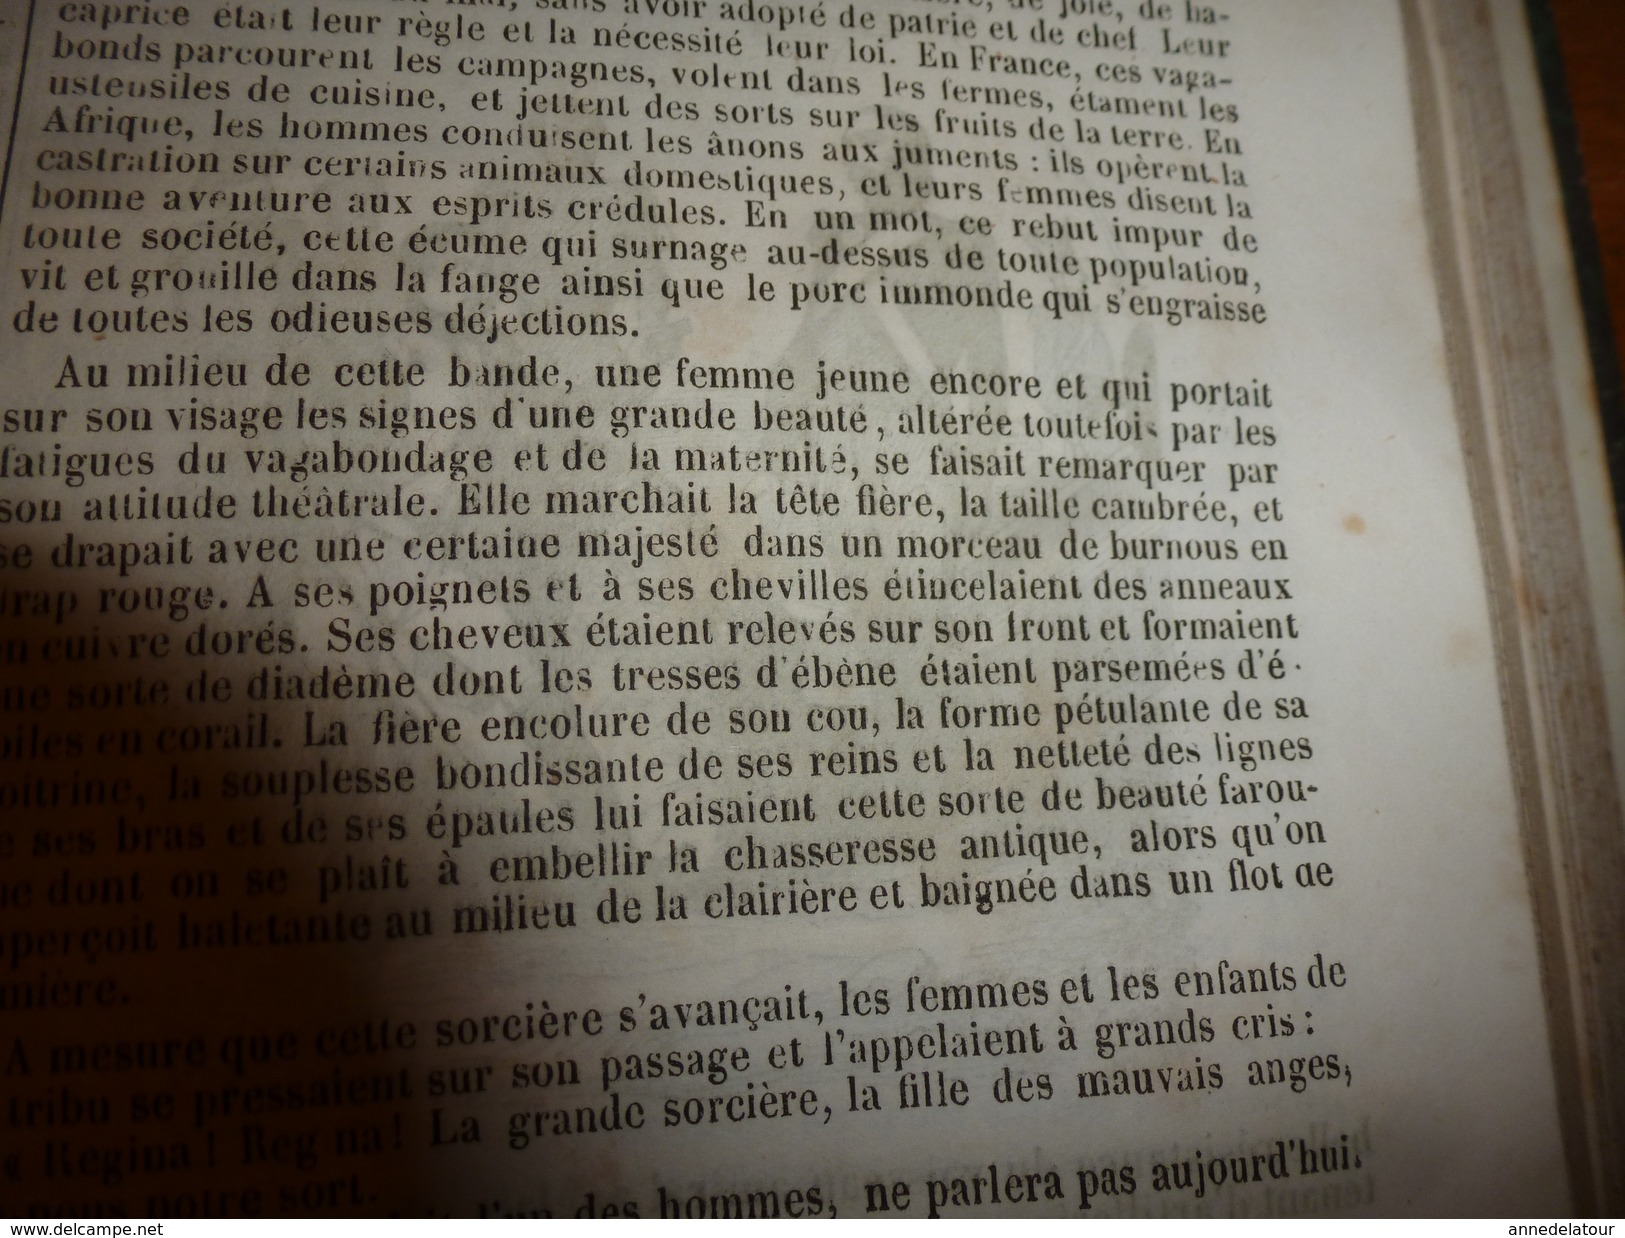 1849  Romans,Contes et Nouvelles illustrés: Aventures des Femmes Lanternier au Maroc;La Femme,Le mari et l'Amant; etc